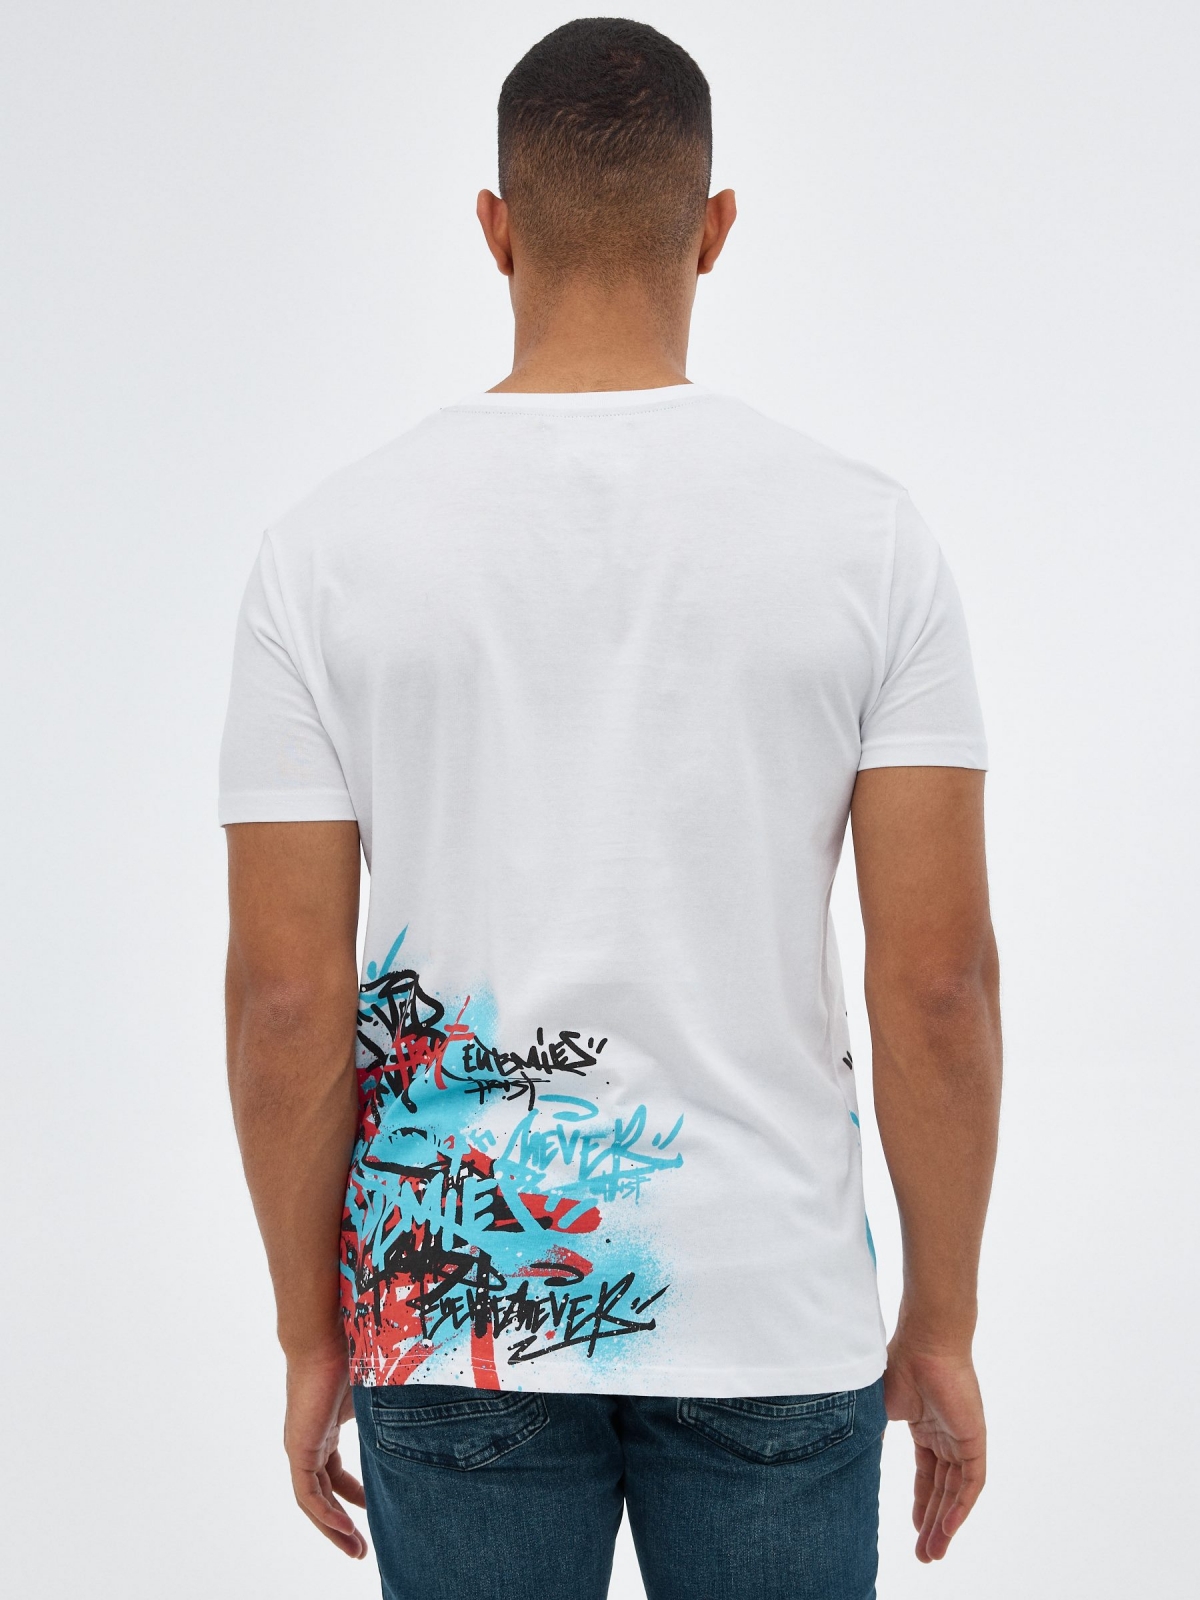 T-shirt preta com impressão de graffiti branco vista meia traseira